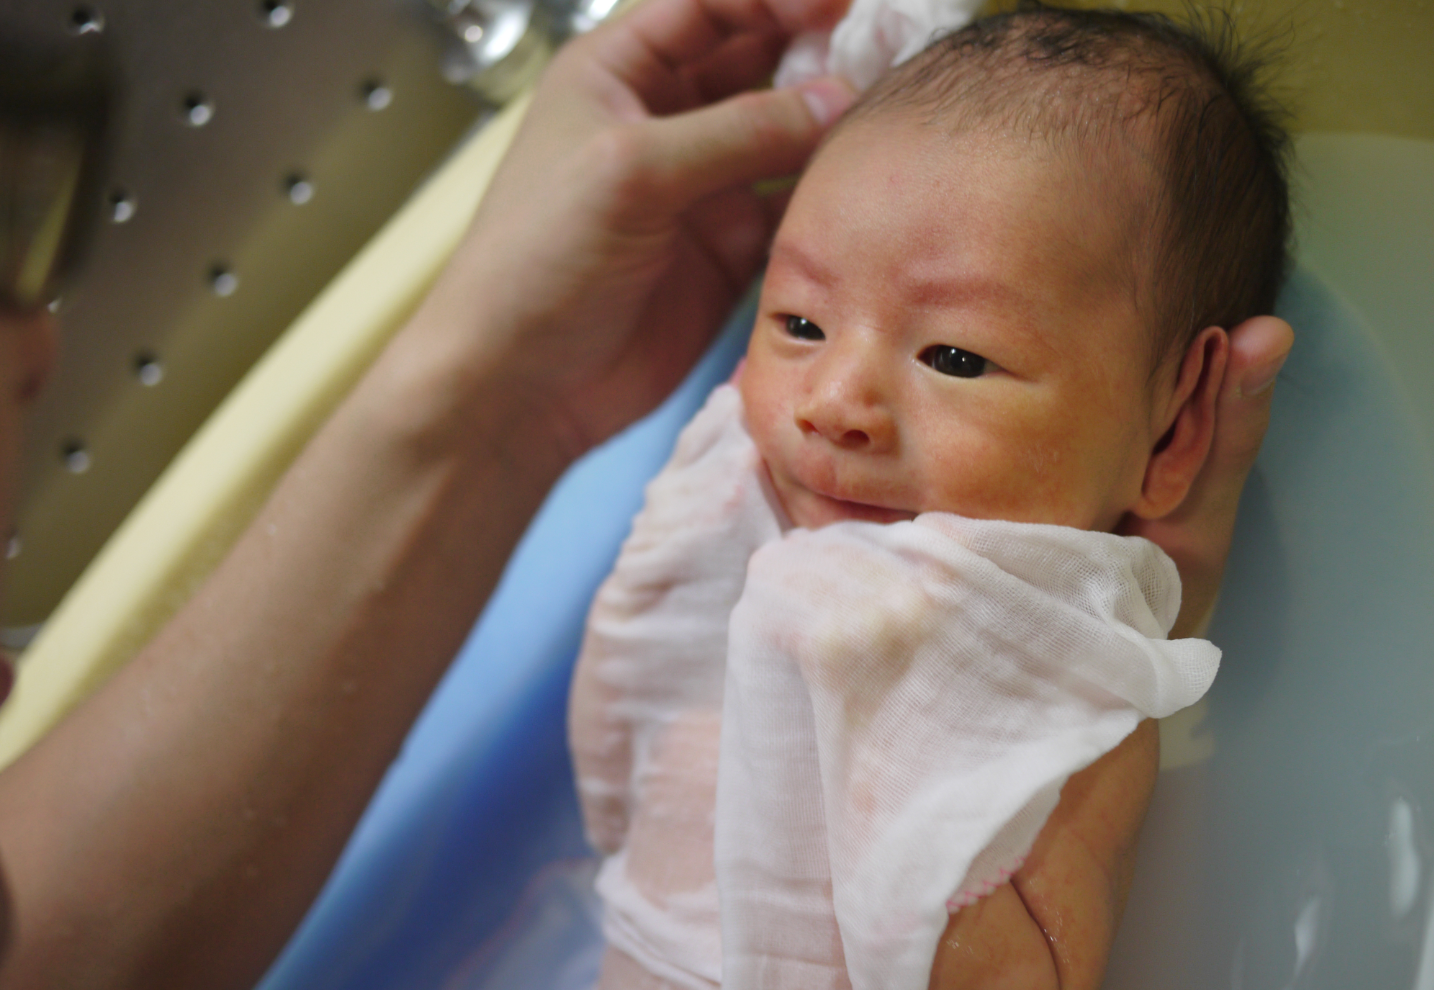 Le Japon discute de la couverture de l'accouchement par l'assurance maladie